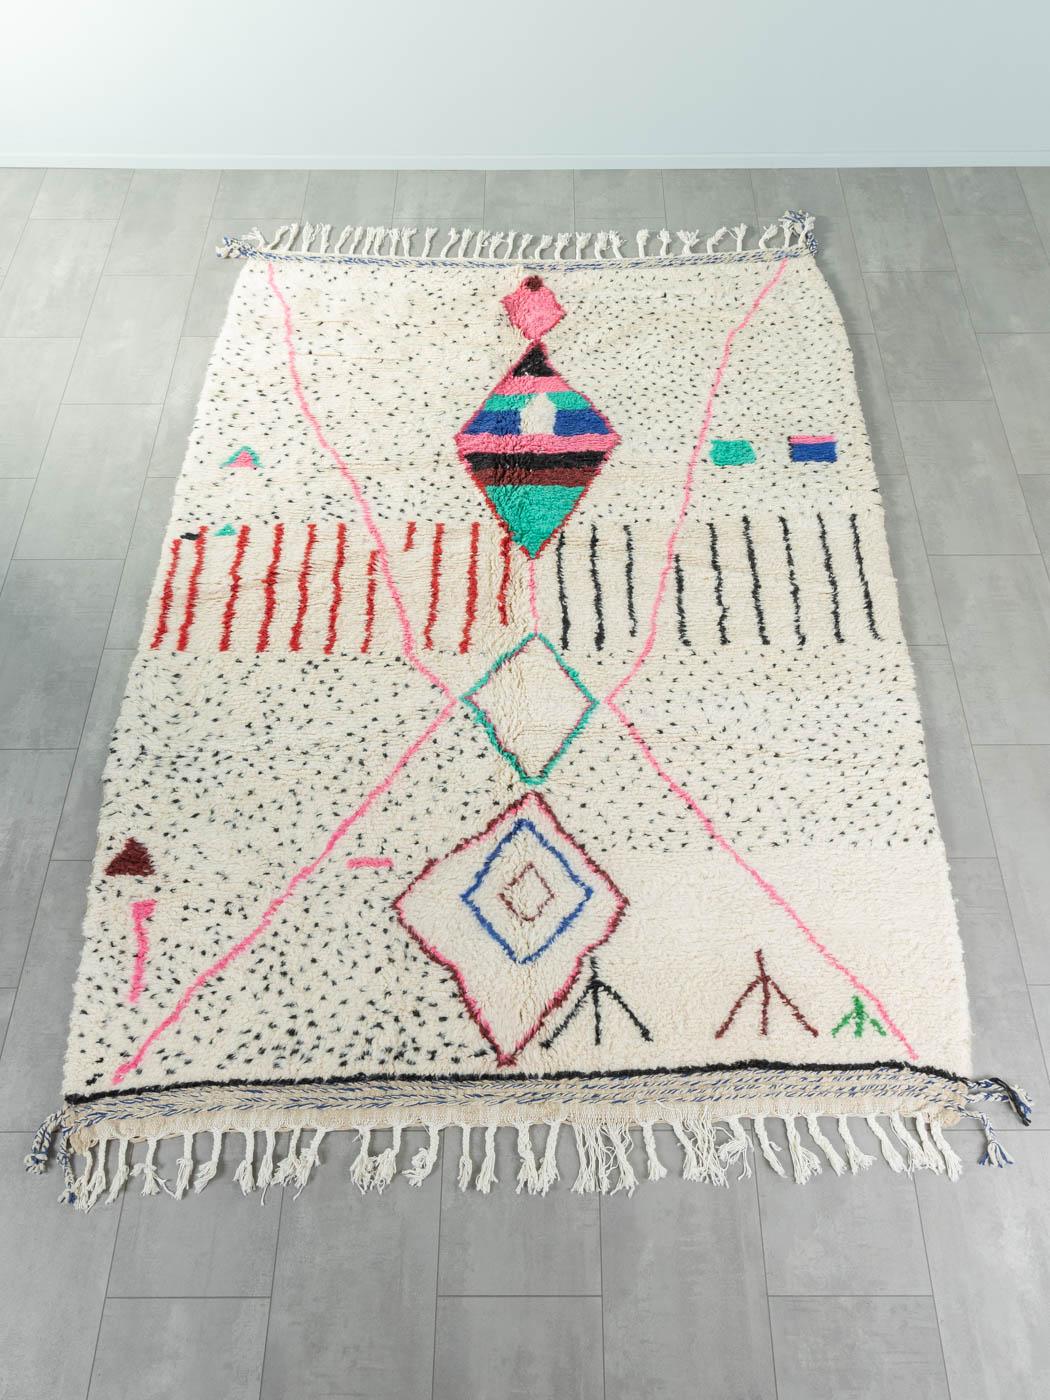 Impromptu ist ein moderner Teppich aus 100 % Wolle - dick und weich, angenehm unter den Füßen. Unsere Berberteppiche werden von Amazigh-Frauen im Atlasgebirge handgewebt und handgeknüpft. Diese Gemeinschaften stellen schon seit Tausenden von Jahren